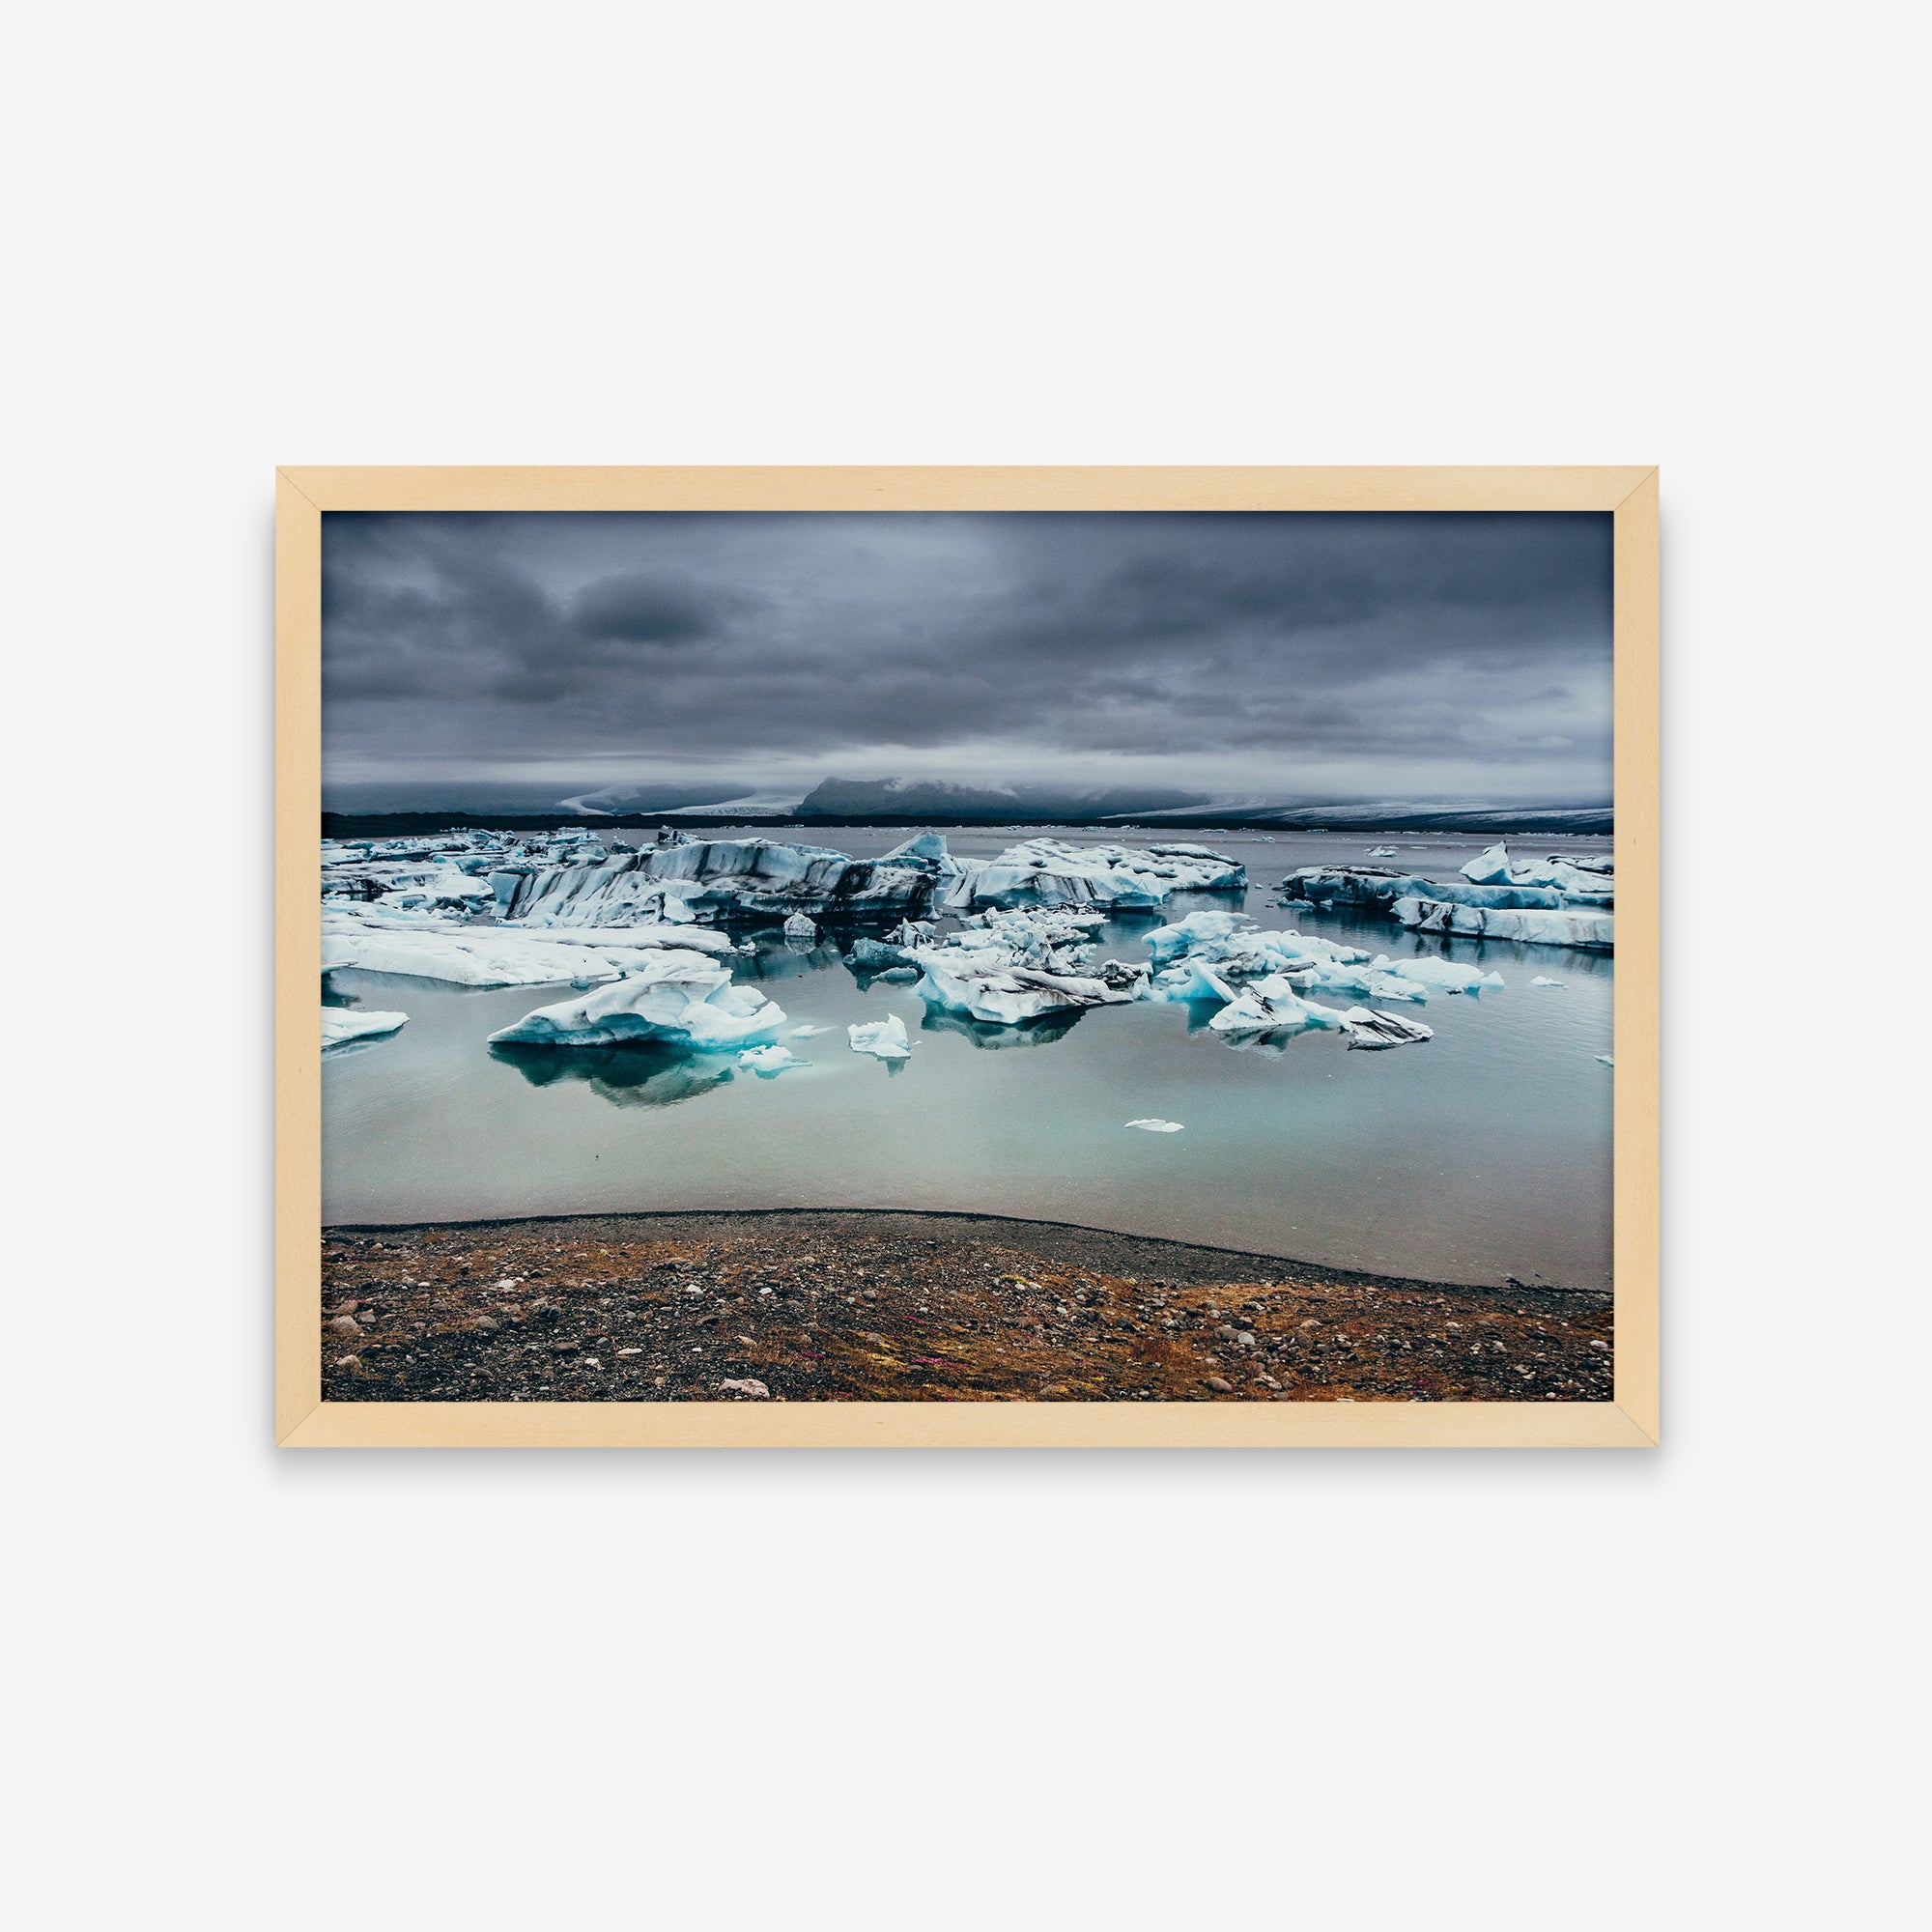 Paisagens - Gelo no mar